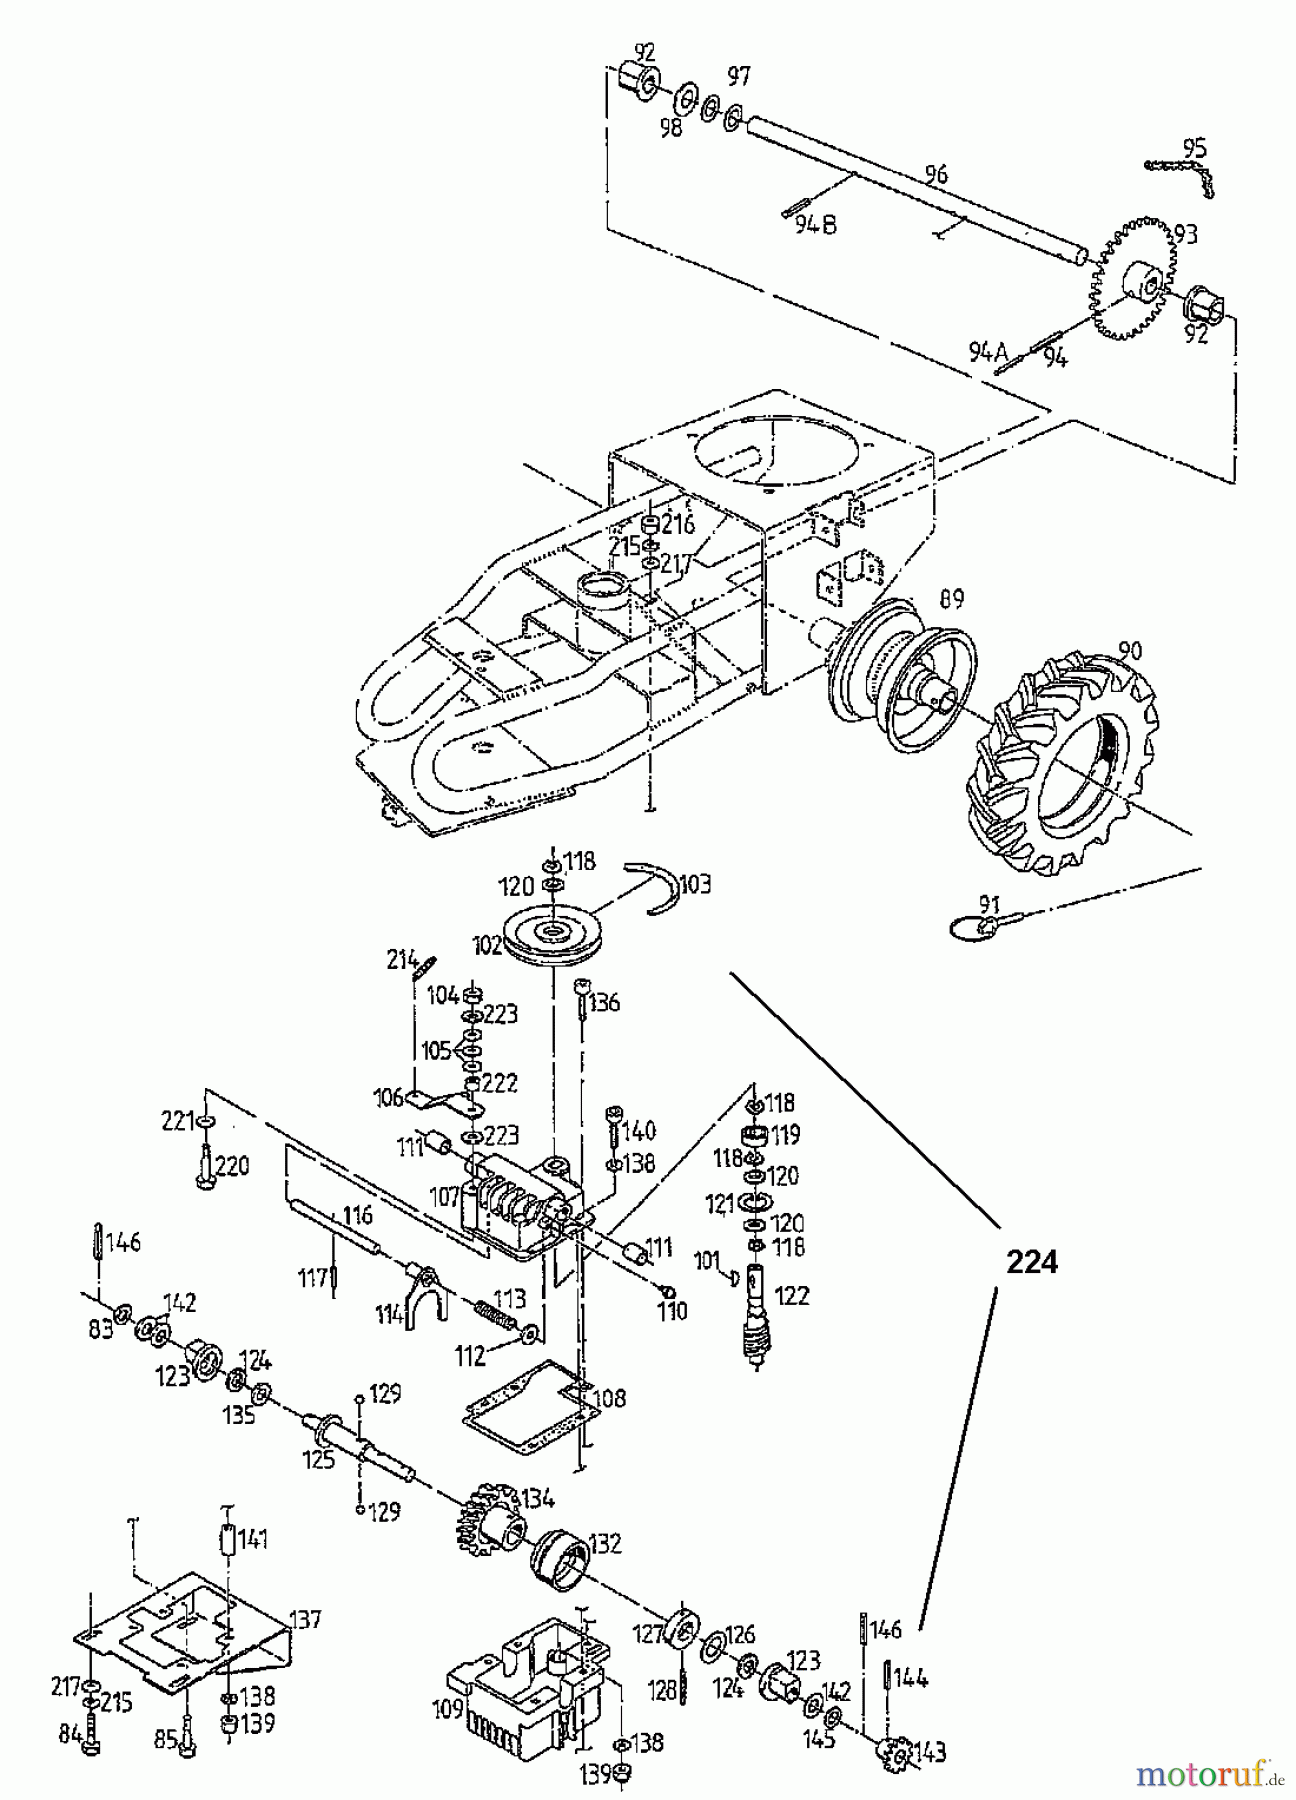  Gutbrod Cutter bar mower BM 710 07515.03  (1997) Gearbox, Wheels